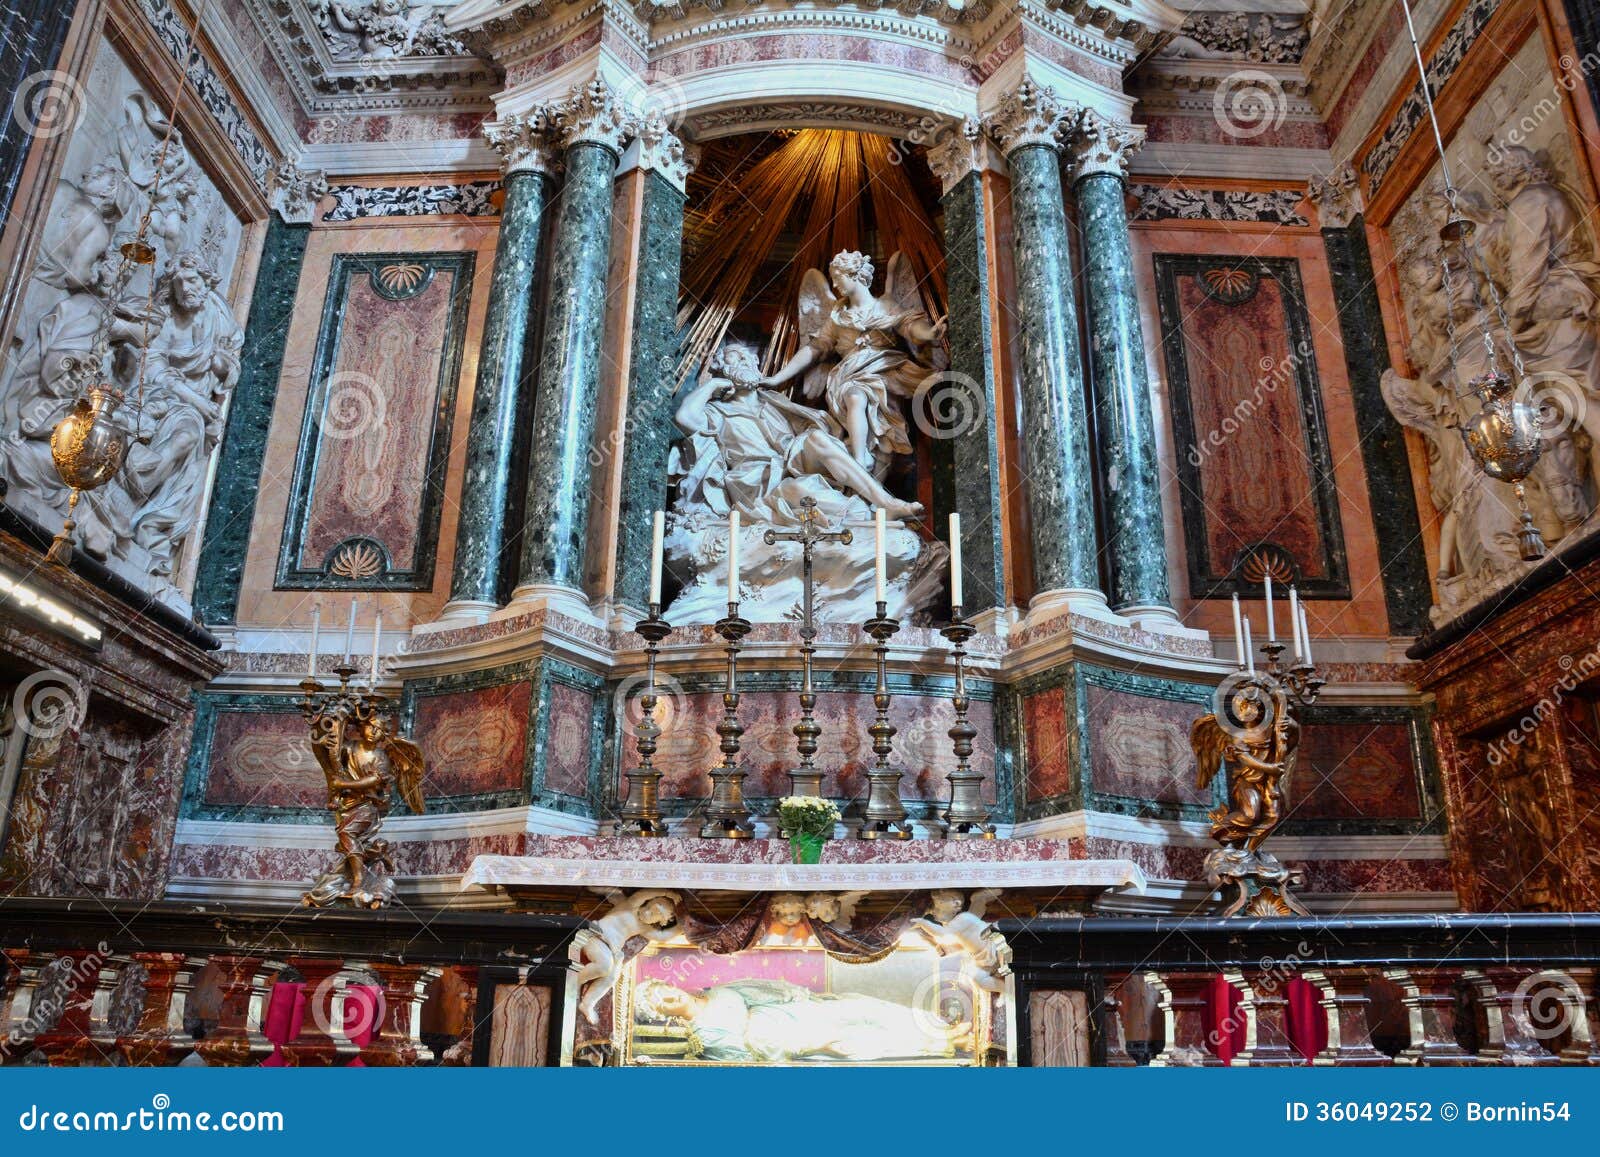 bernini sculpture in the church of santa maria della vittoria